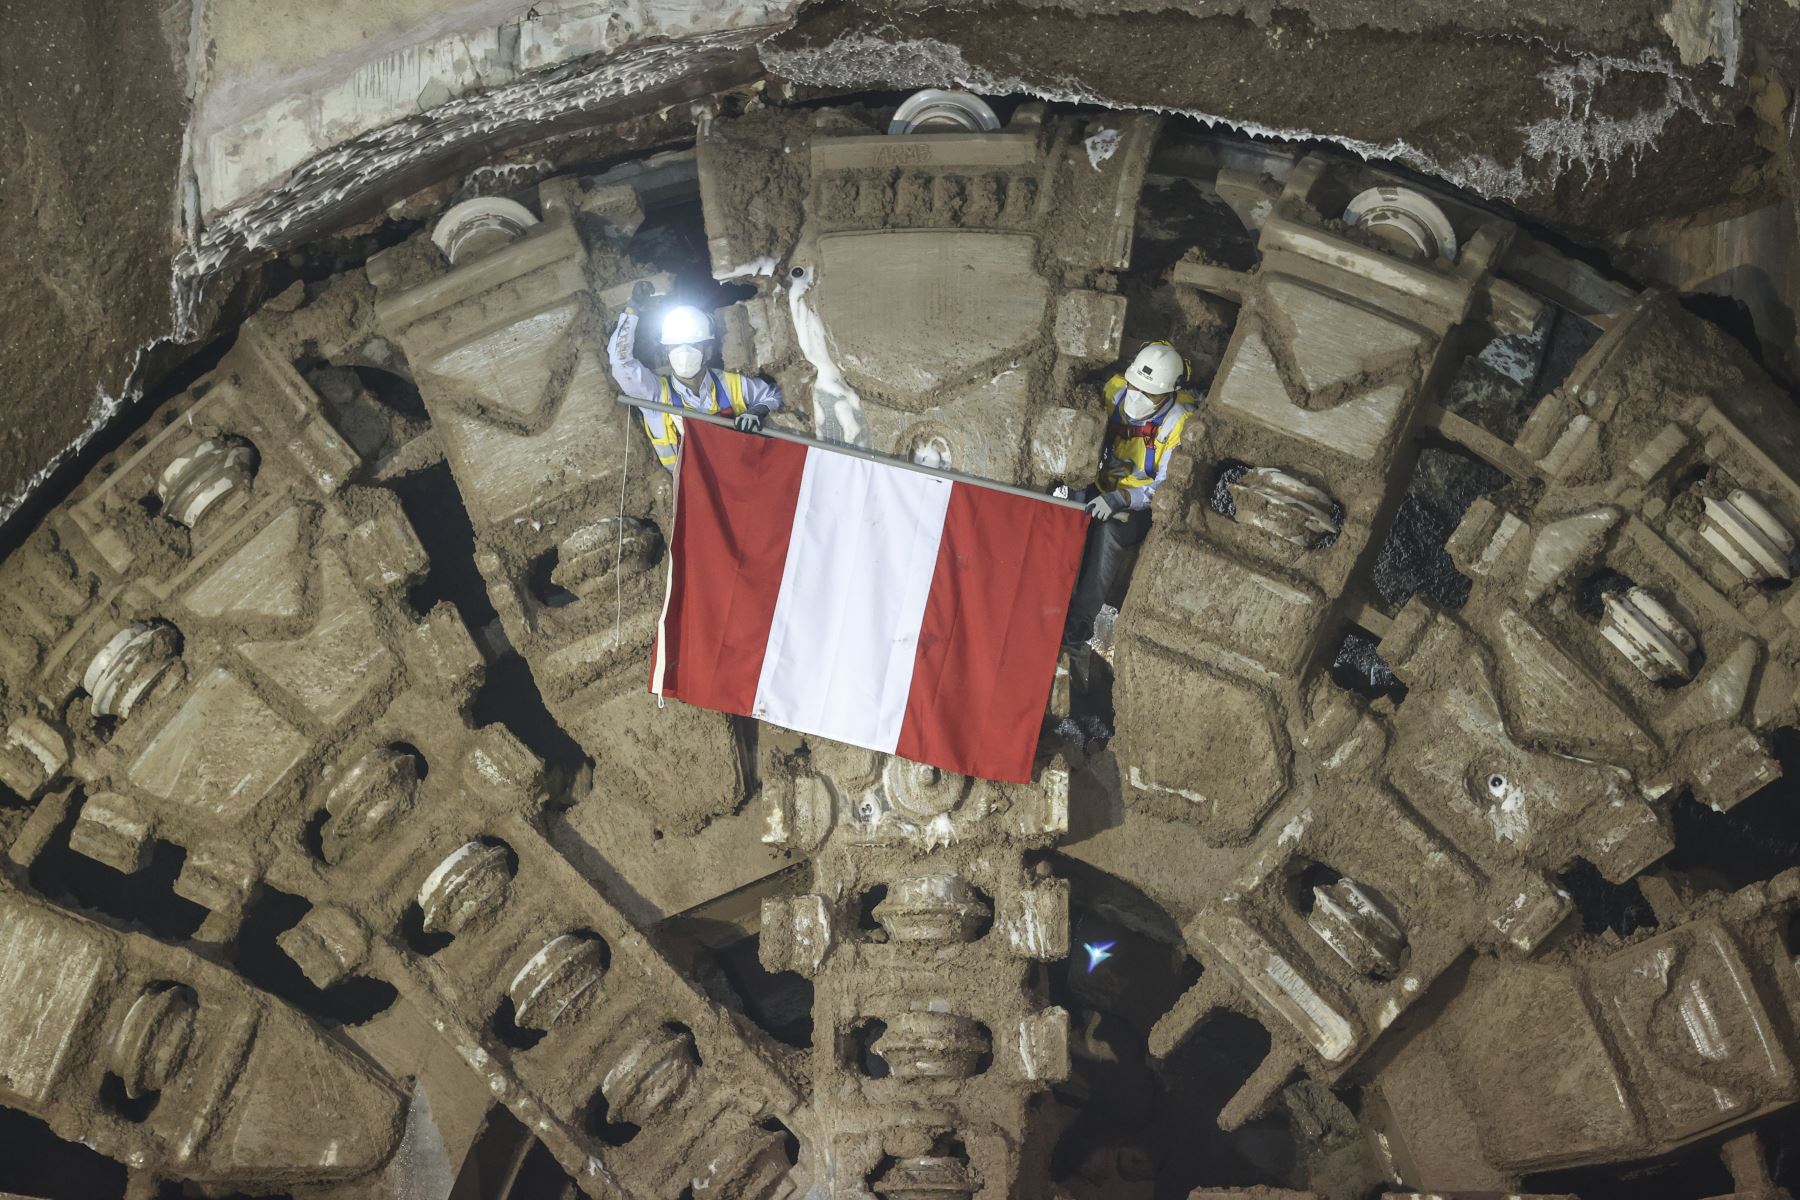 La tuneladora que excava por tramos la Línea 2 del Metro de Lima avanza un promedio de 14 metros por día. Desde que inició operaciones, en julio pasado, ha excavado el tramo que va desde la estación San Juan de Dios (E-19) hasta Circunvalación (E-18), en el distrito de San Luis. Foto: ANDINA/Jhonel Rodríguez Robles